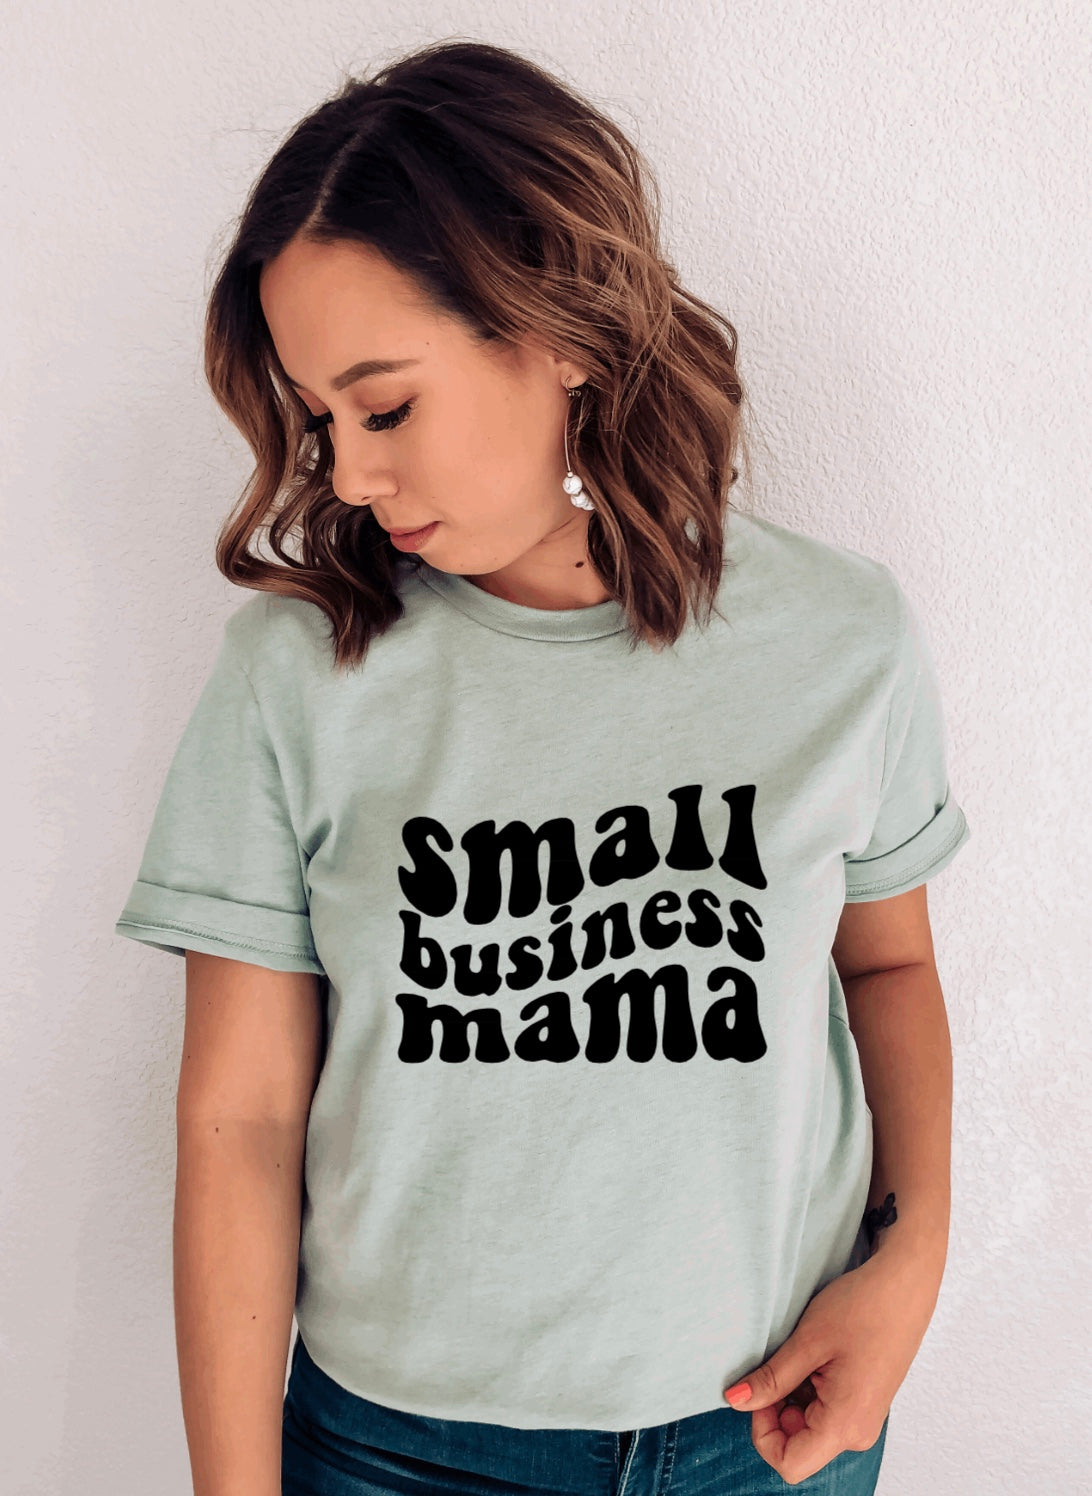 Small business mama t-shirt 